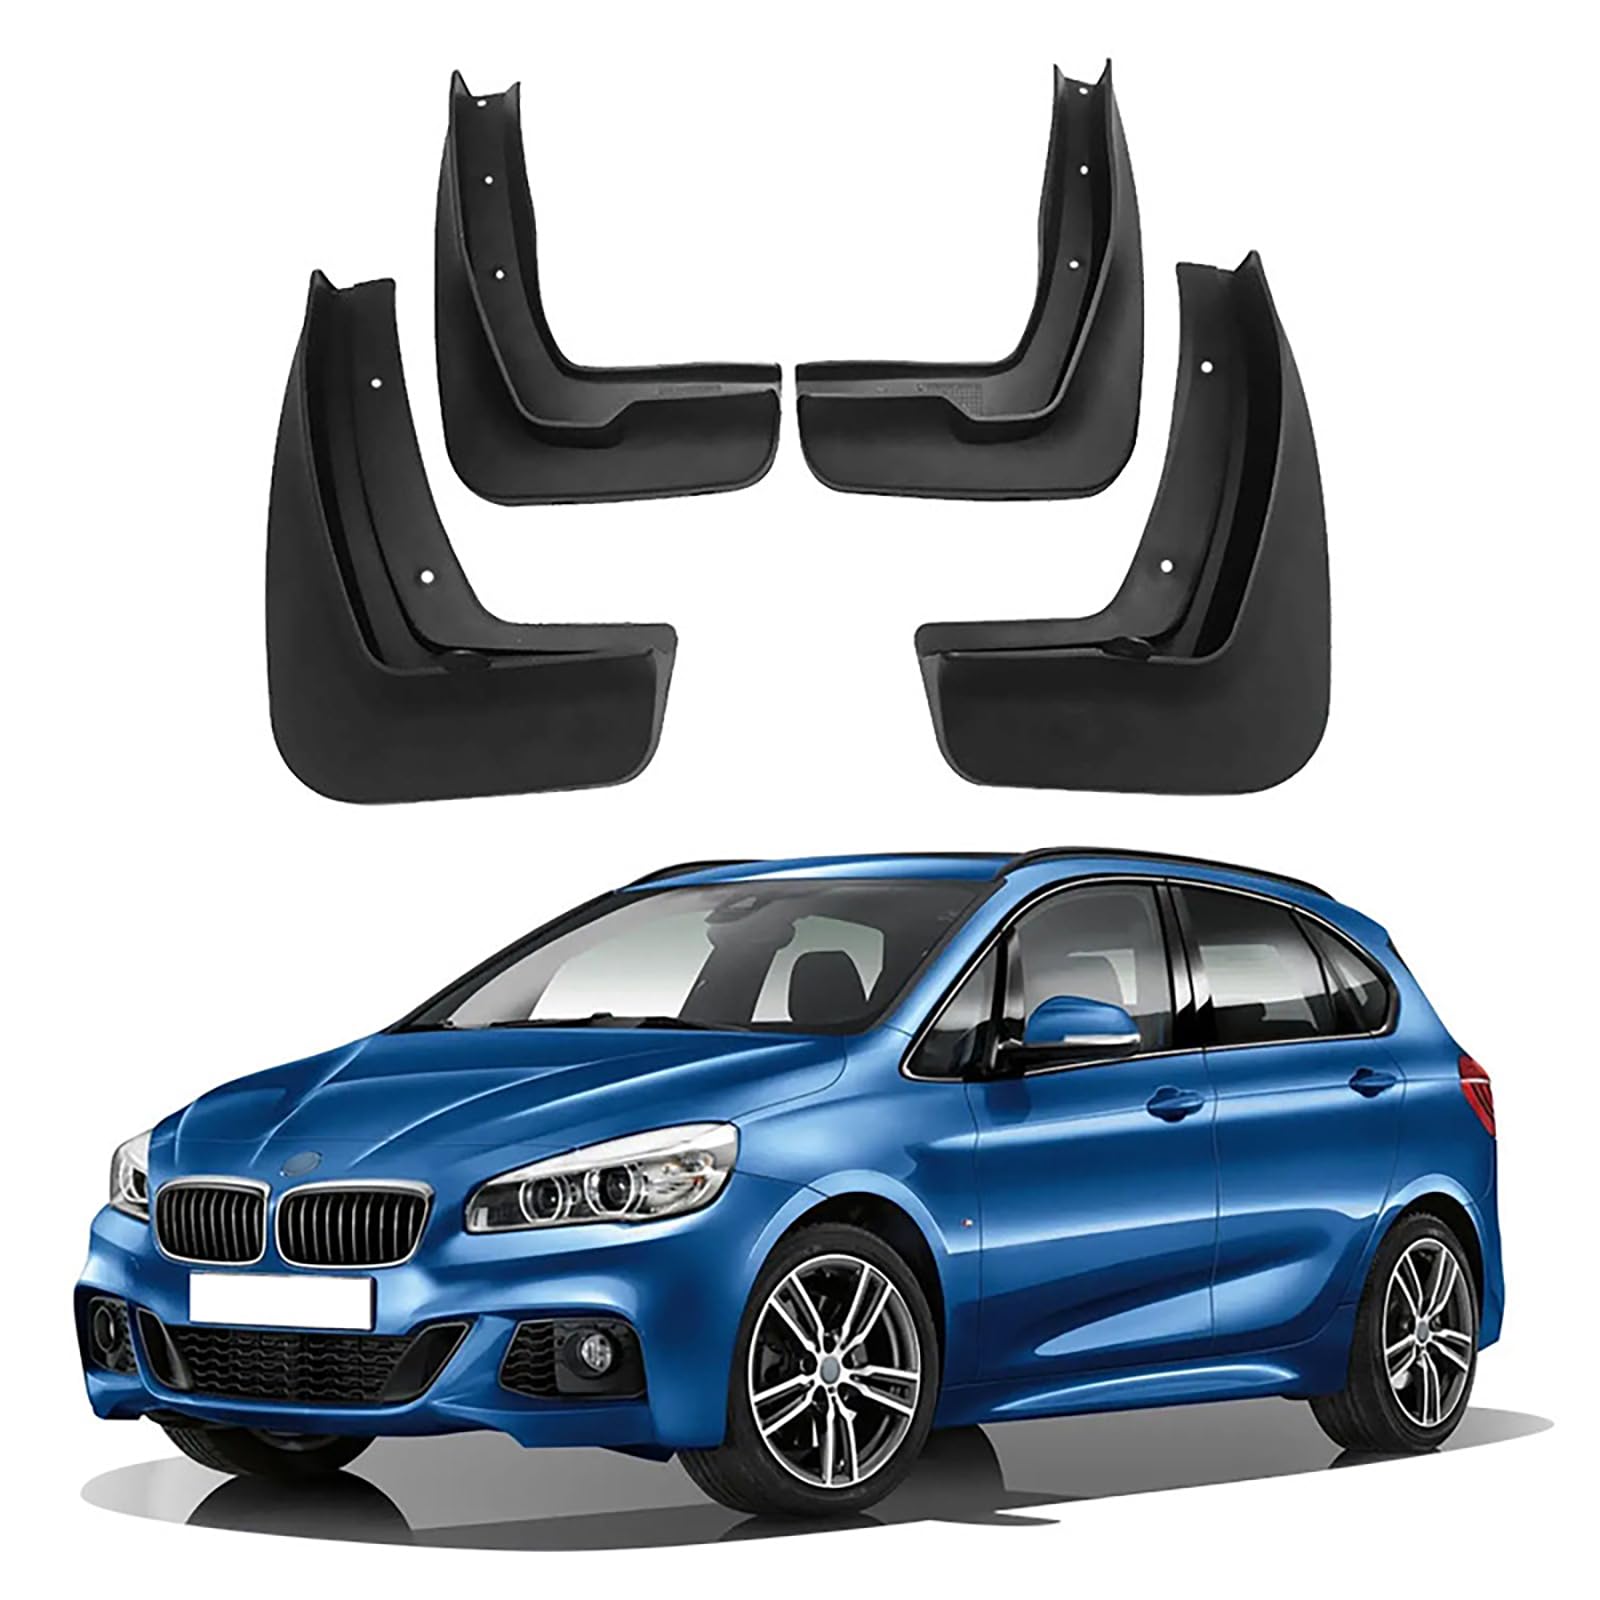 Kompatibel mit BMW 2 Series F22 F45 2015-2020, 4 Stück Autokotflügel, Spritzschutz, Schmutzfänger, Schutzbleche gegen Sand von YPSBBHD